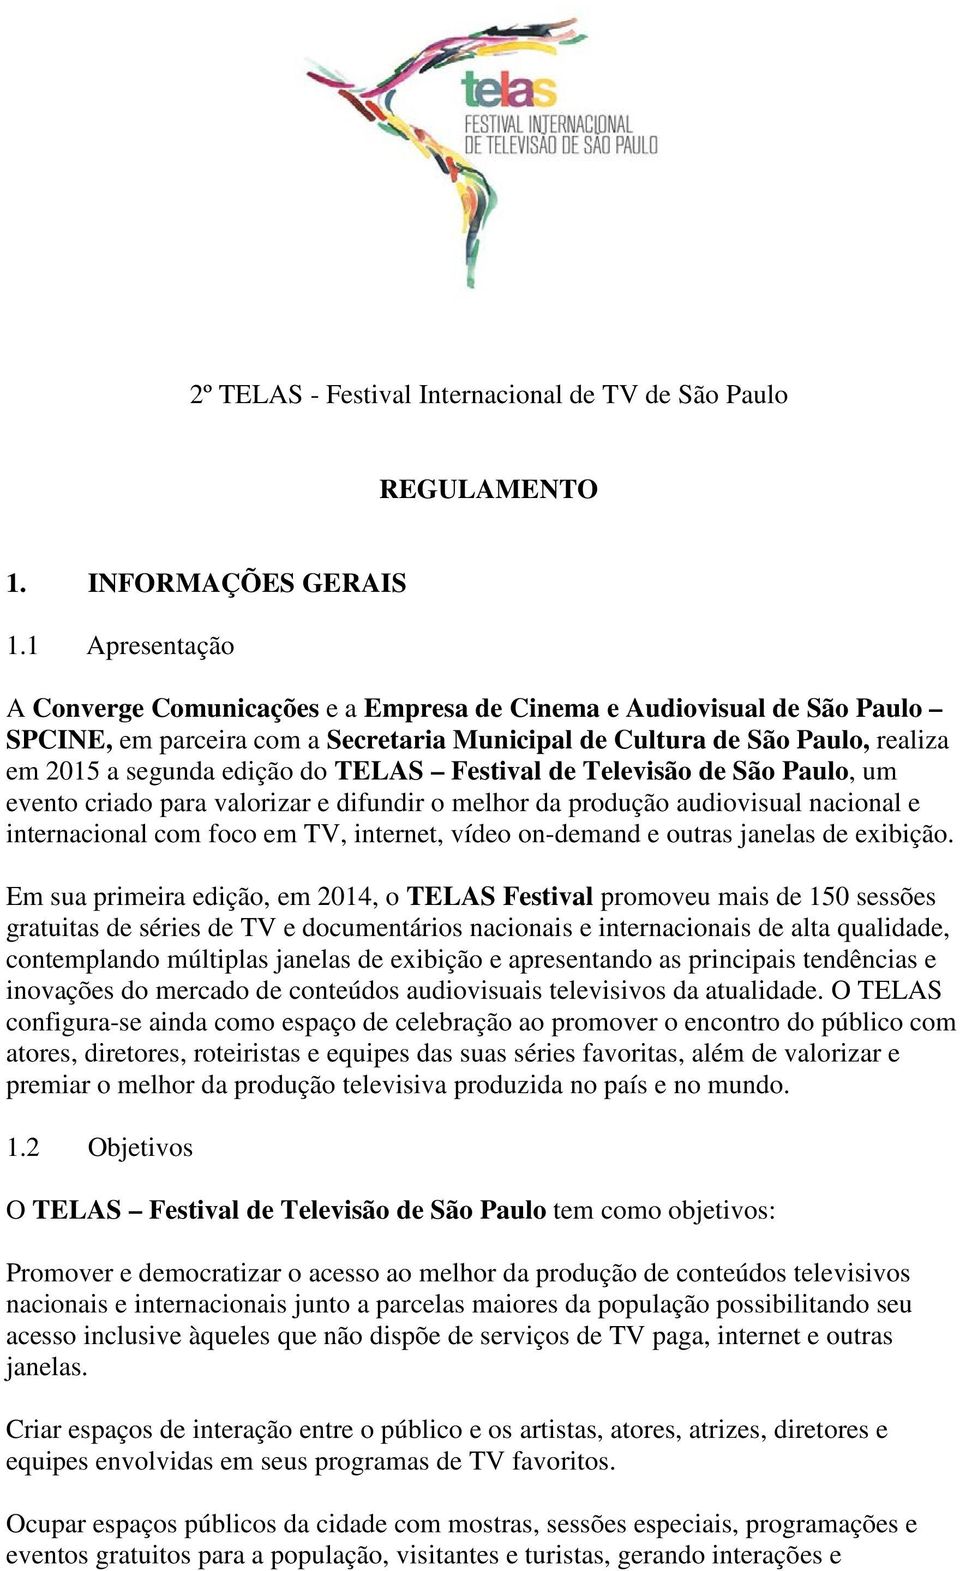 TELAS Festival de Televisão de São Paulo, um evento criado para valorizar e difundir o melhor da produção audiovisual nacional e internacional com foco em TV, internet, vídeo on-demand e outras